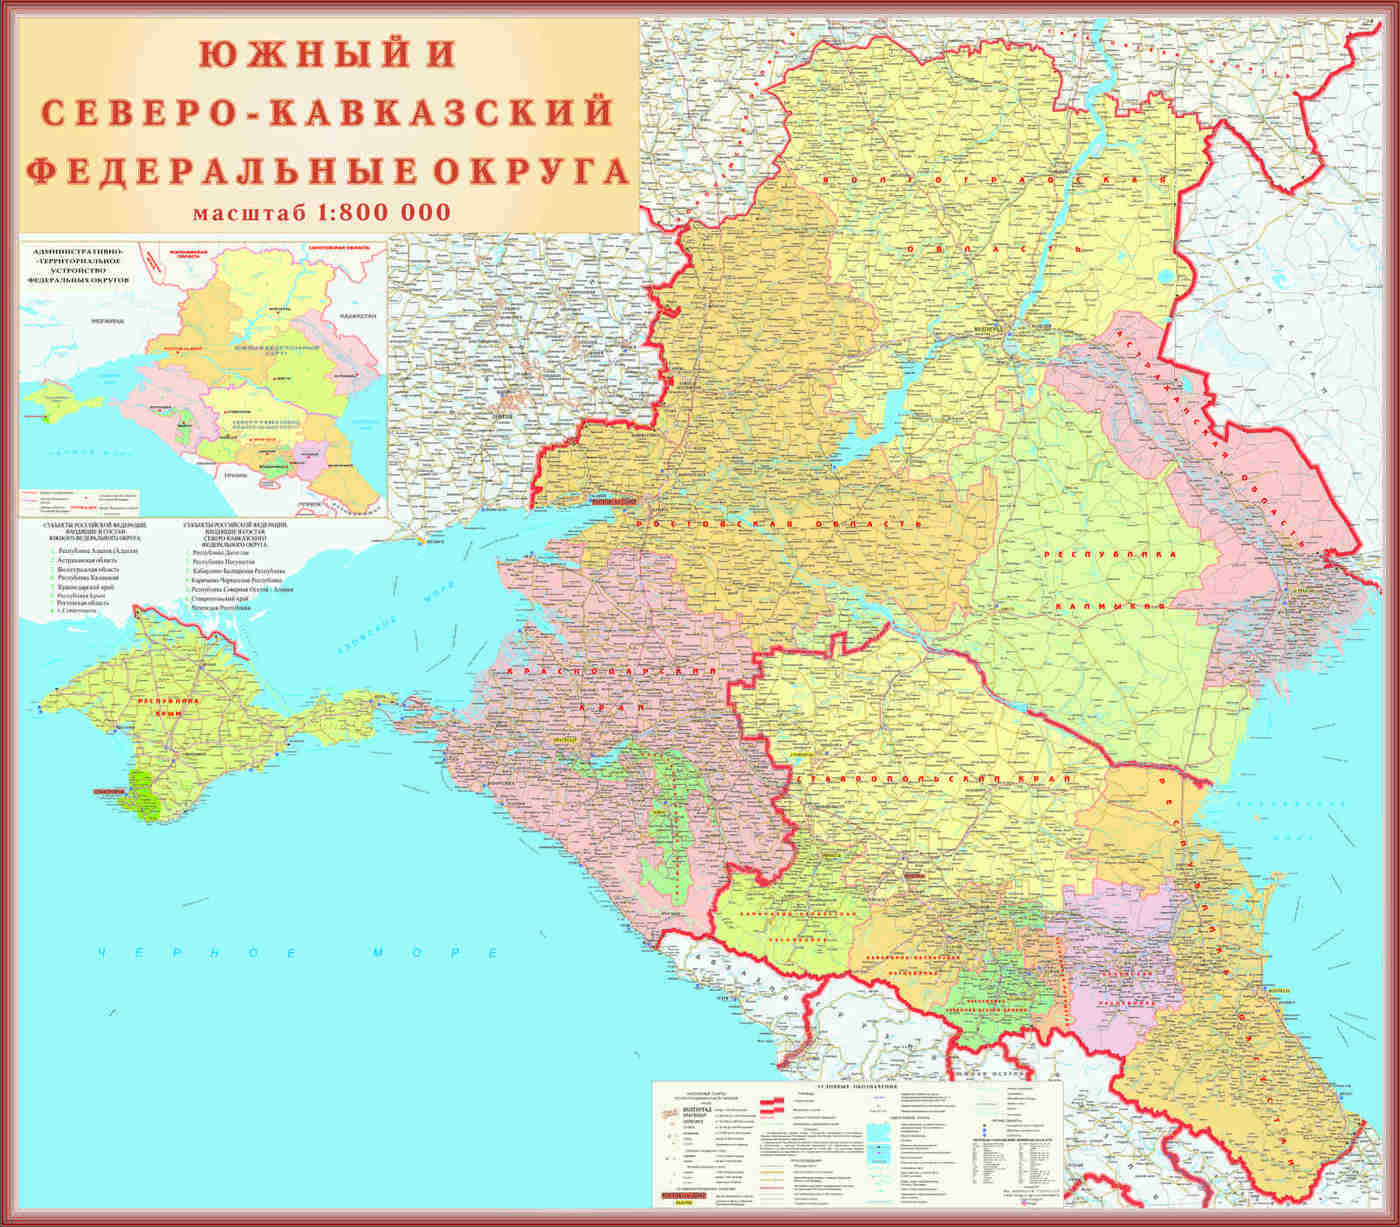 Ростовская область входит в северный кавказ